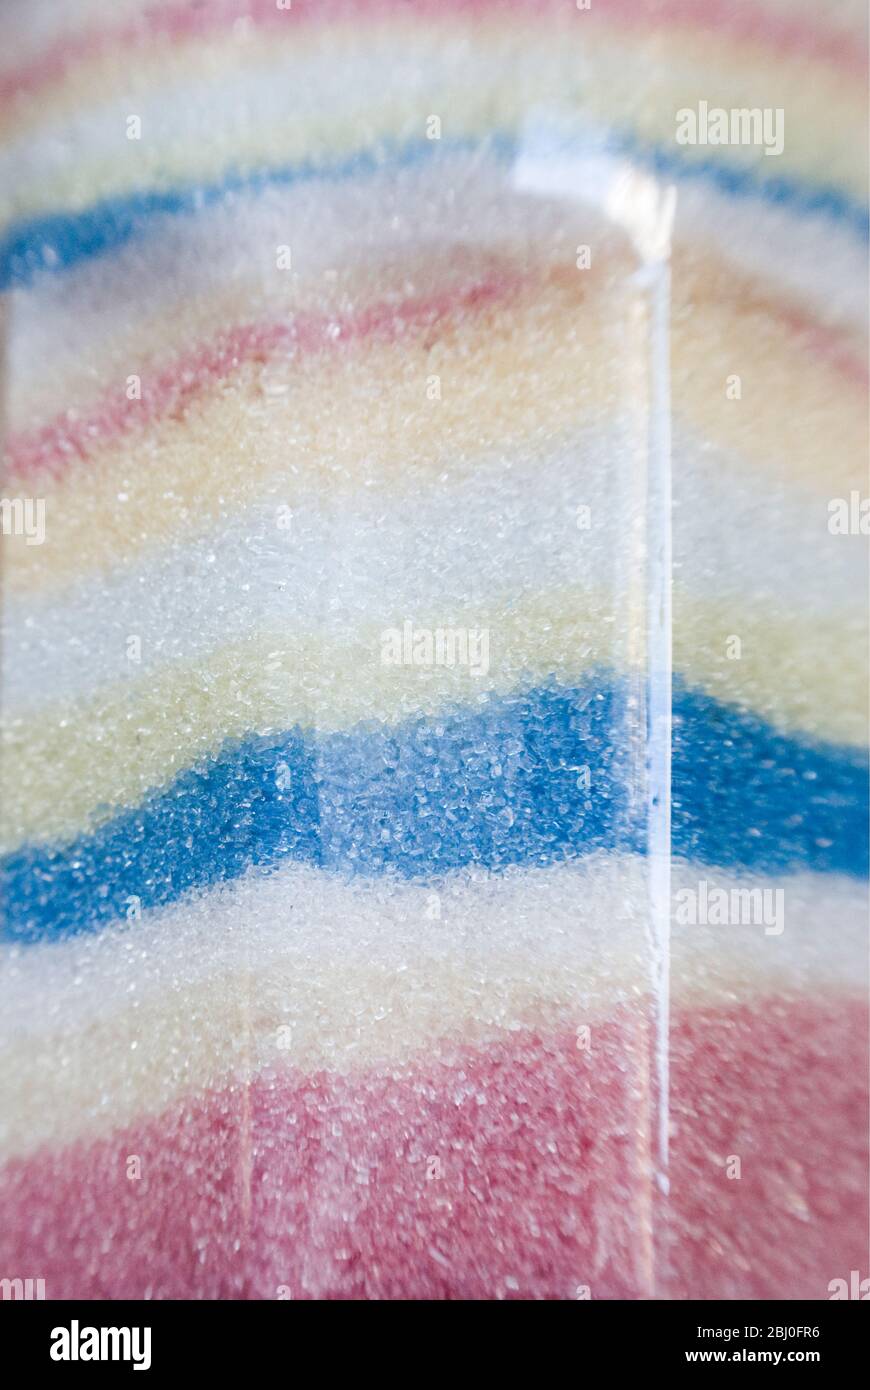 Détail du bol de sucre français avec cristaux de sucre de couleur pastel disposés en couches séparées - Banque D'Images